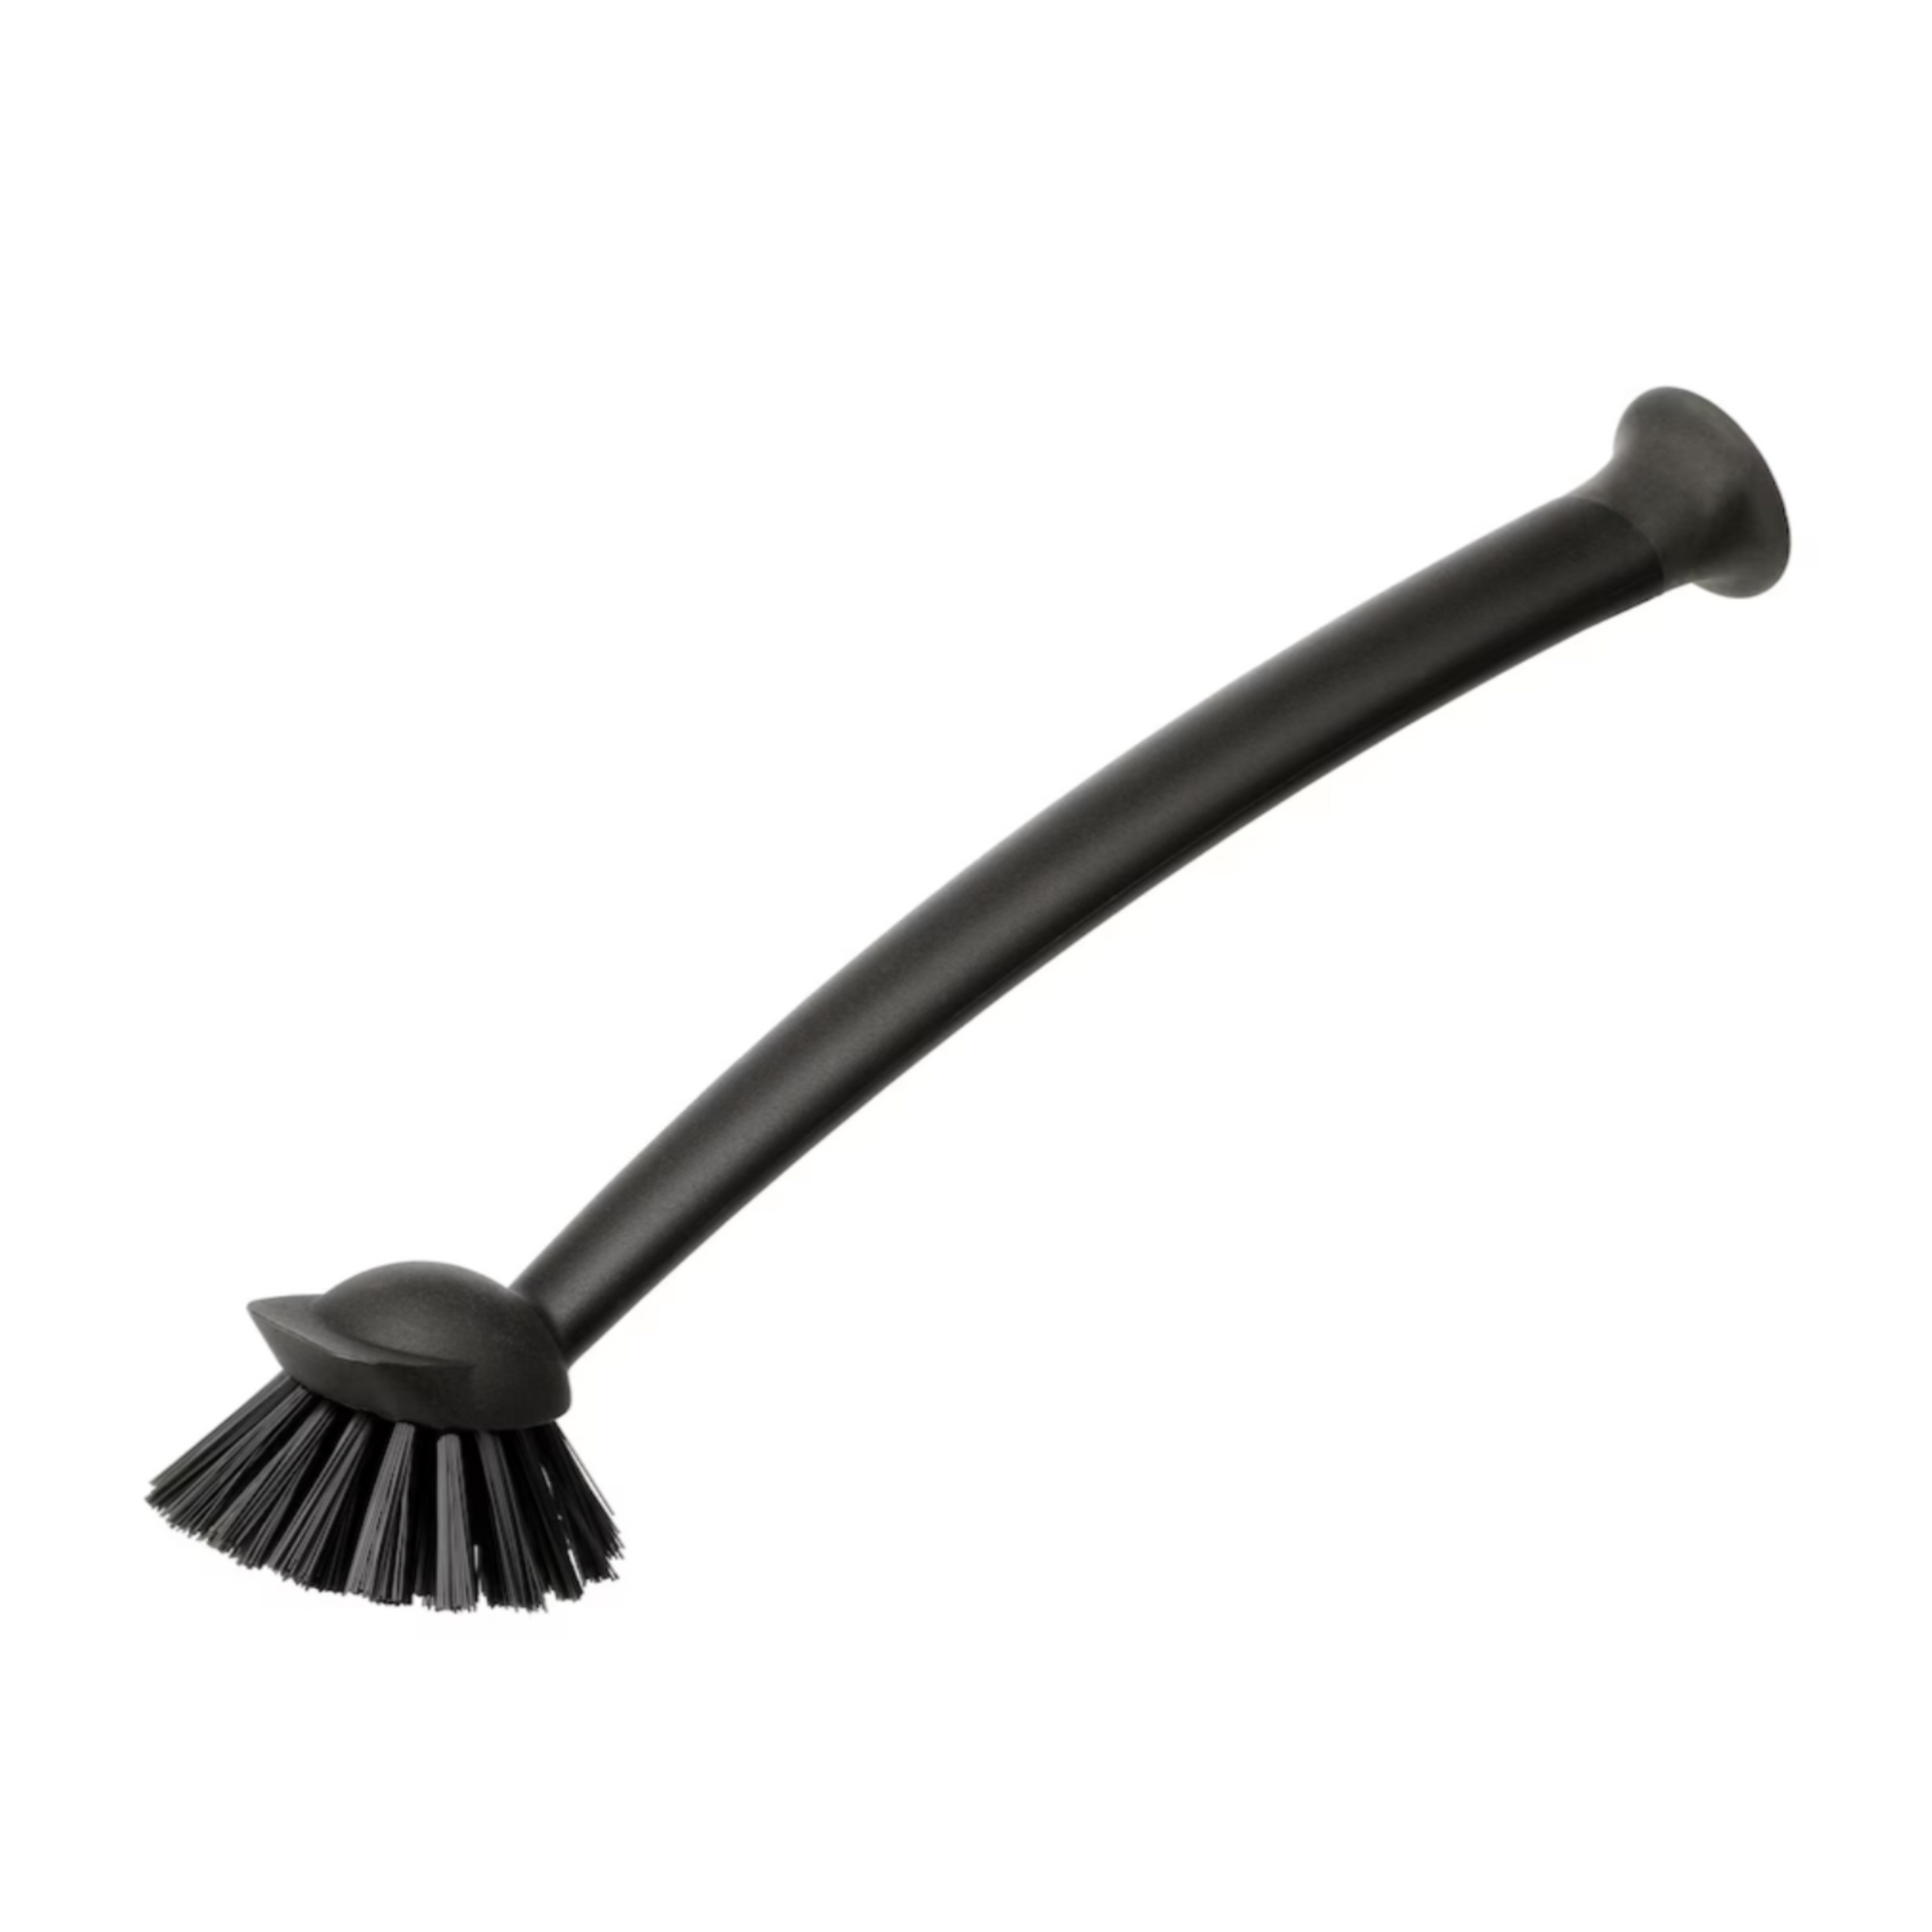 IKEA Rinnig Dish Brush, Black (4534820307009)